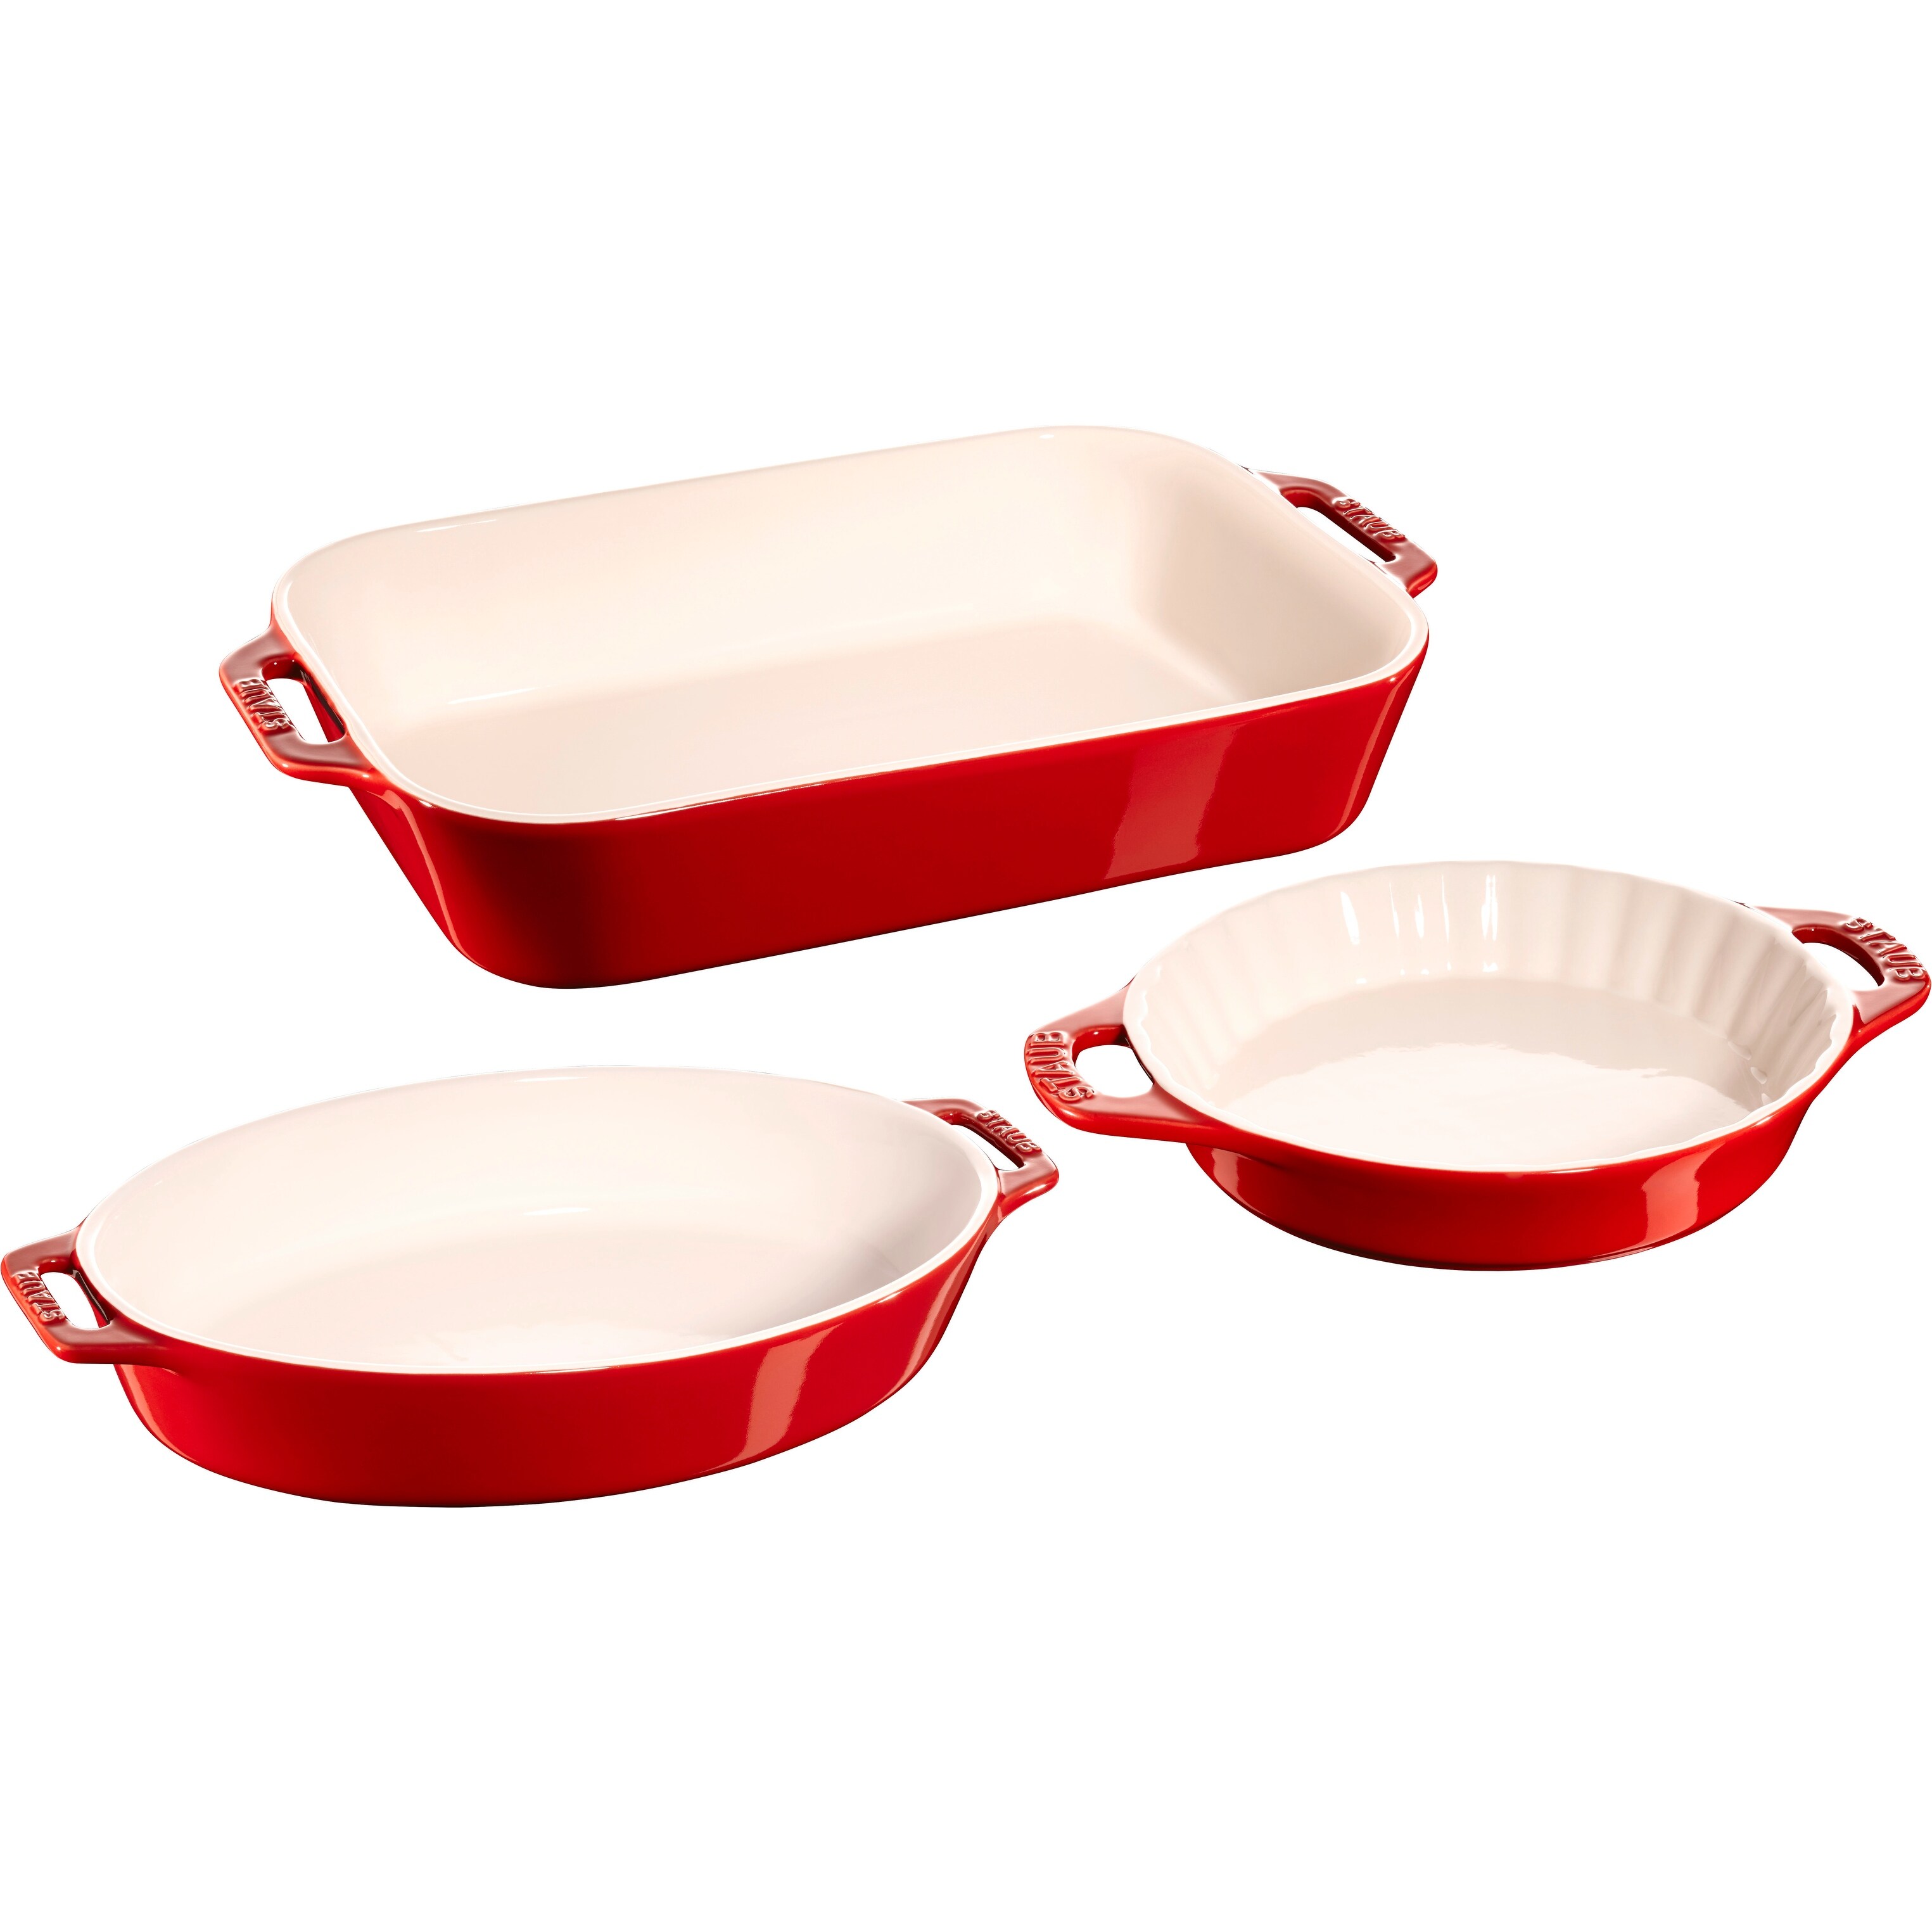 STAUB Ceramics 3-pc Rectangular Baking Dish Set - Bed Bath & Beyond -  34832519